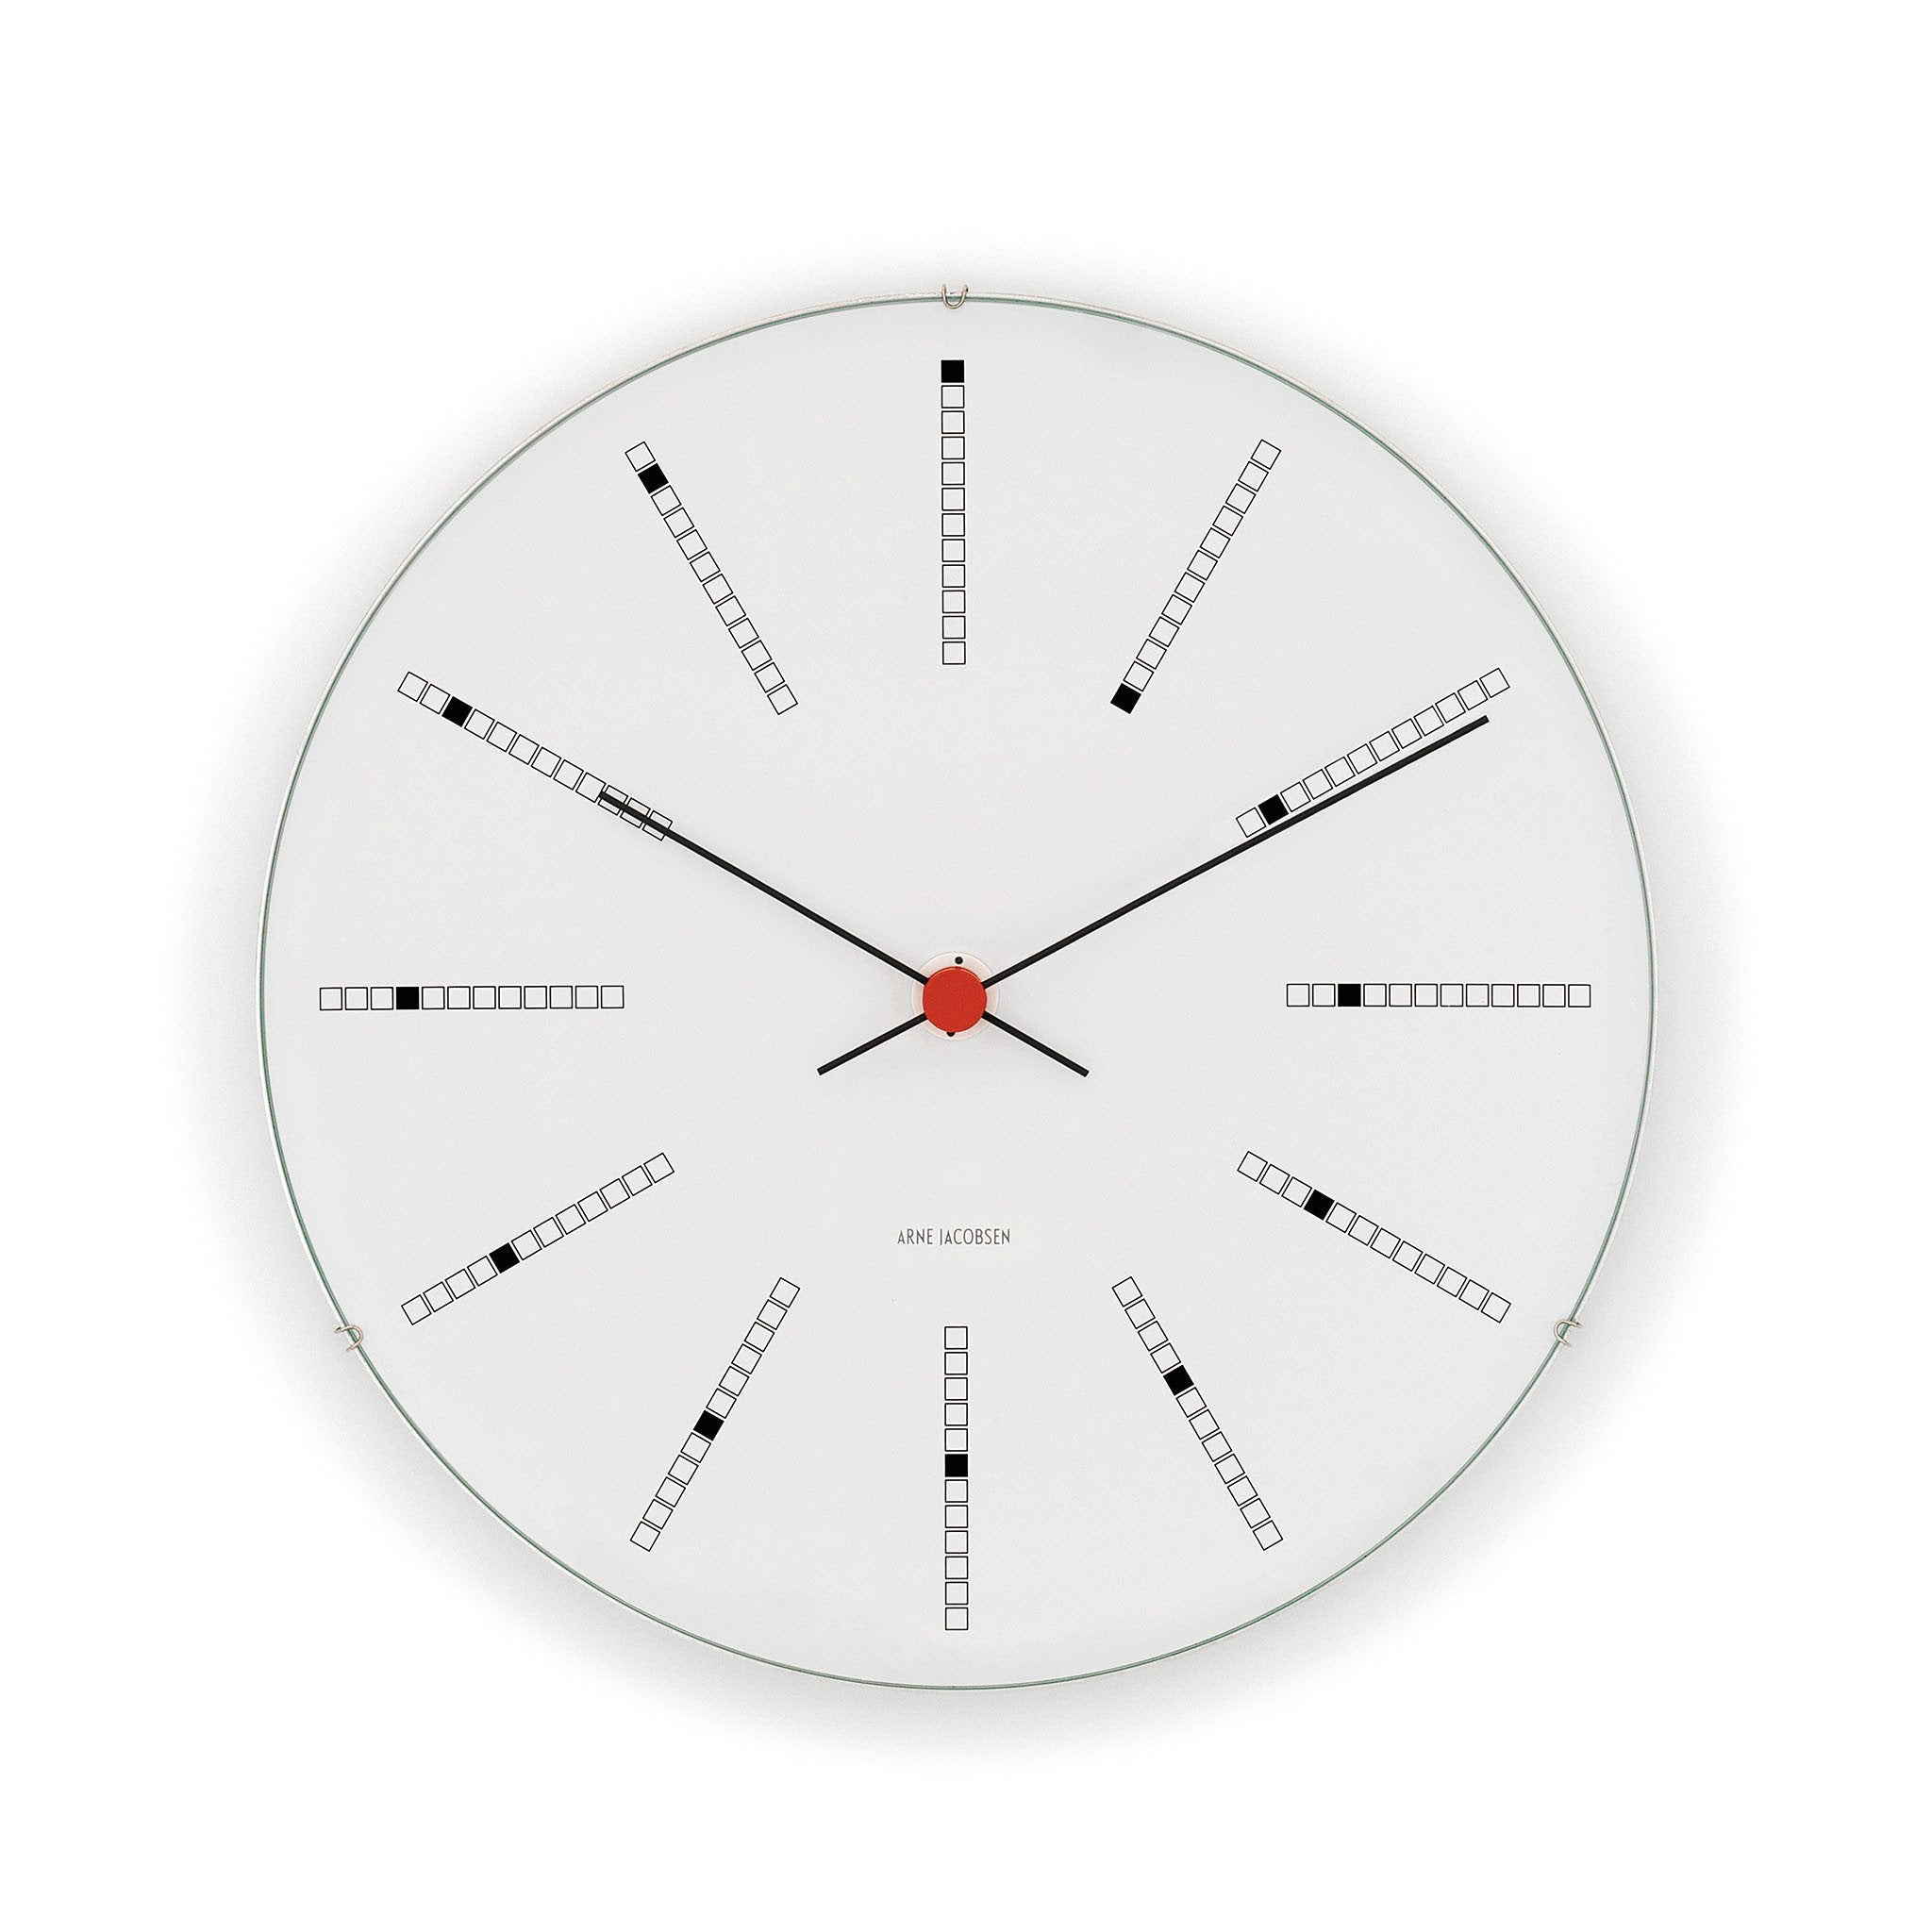 Arne Jacobsen Bankers Wall Clock, 11.4" / 29 cm